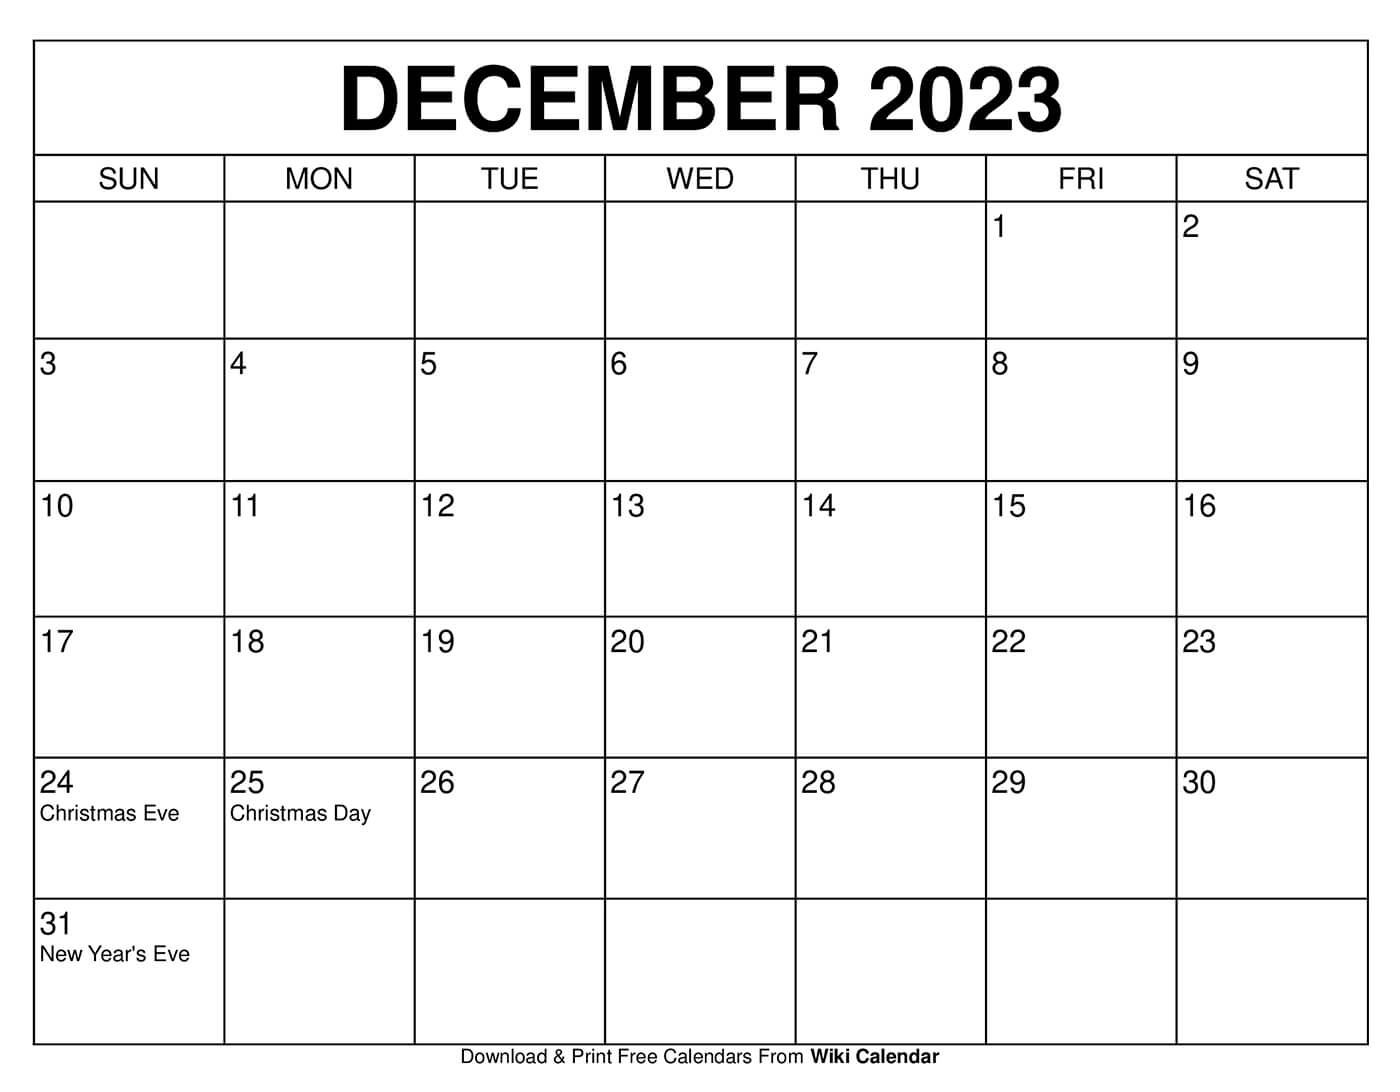 december-2023-calendar-layout-get-calendar-2023-update